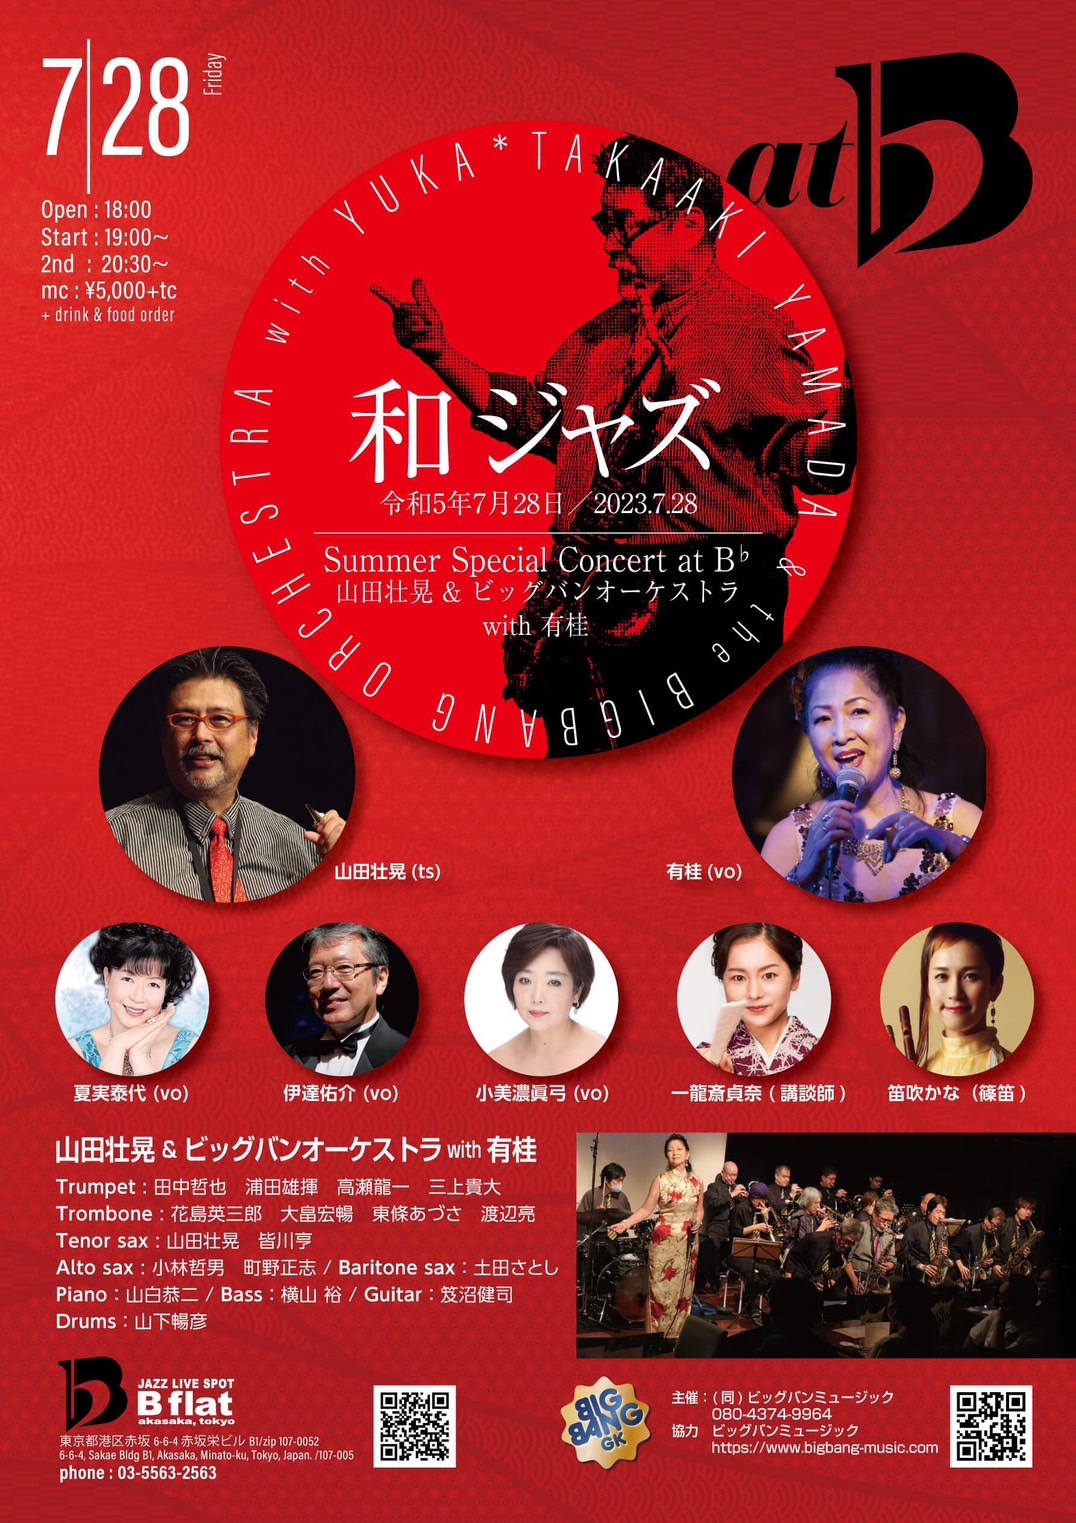 [2023.7.28] 和ジャズ Summer Special Concert at Bb 山田壮晃 & ビッグバンオーケストラ with 有桂